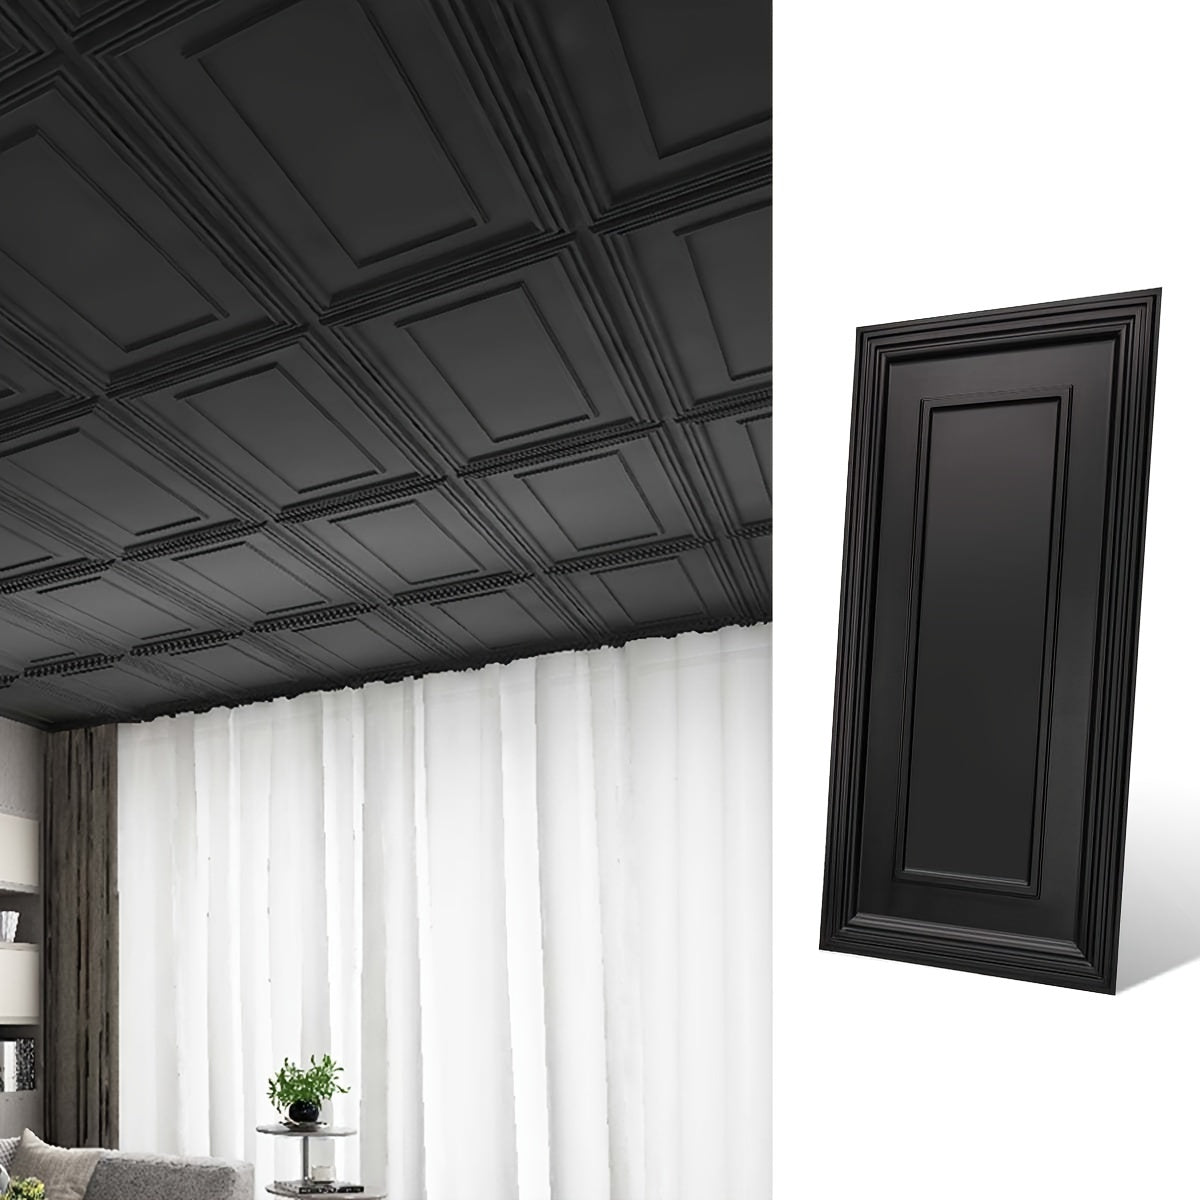 Art3d 12-Pack Rectangular Frame Design 24" x 48" Black Ceiling Tiles, 96 Sq ft/Case